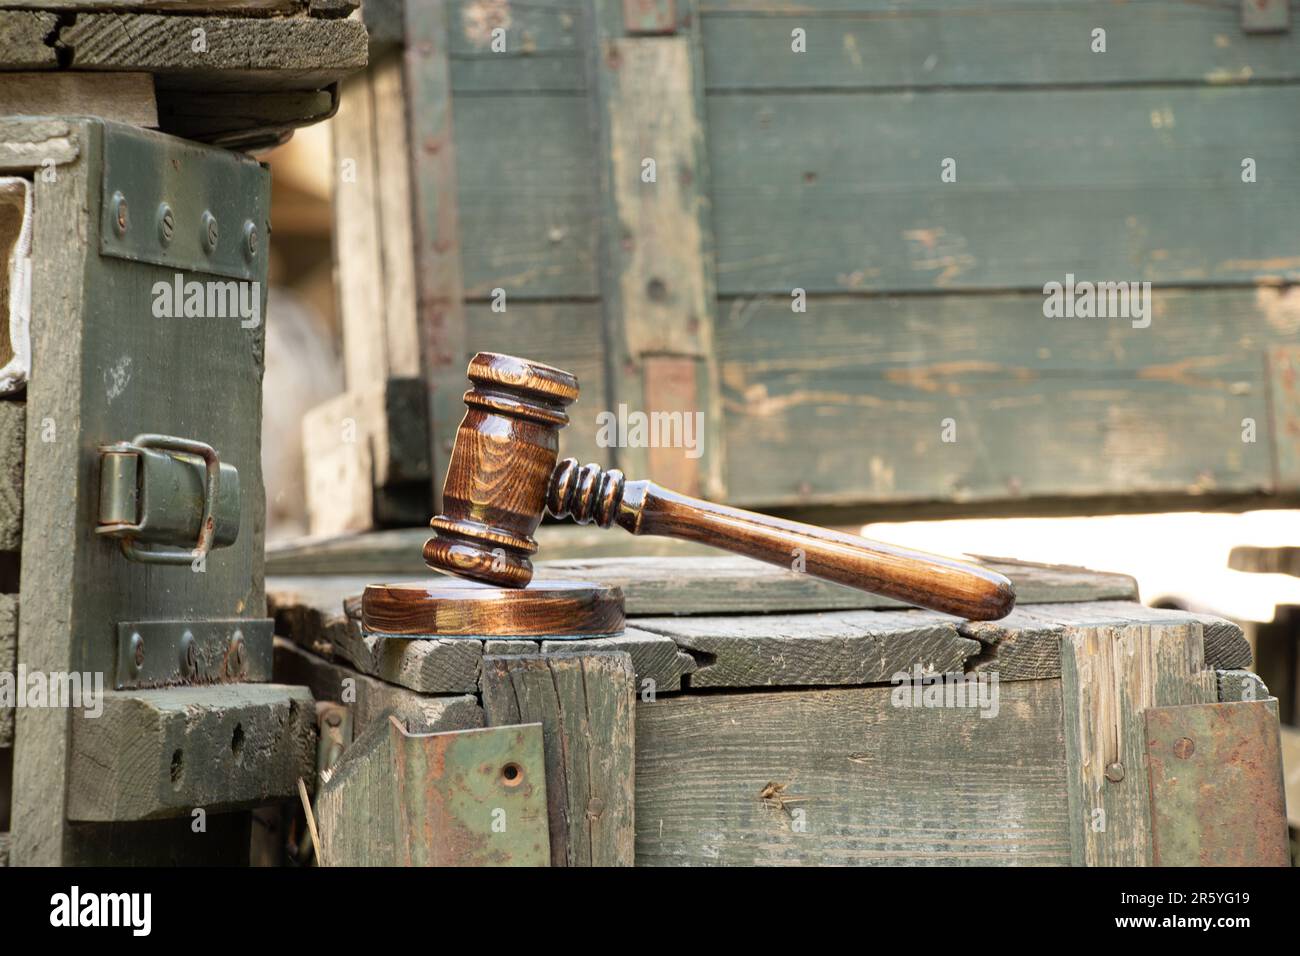 Le gavel du juge se trouve sur une caisse de munitions en bois, un tribunal militaire, un tribunal Banque D'Images